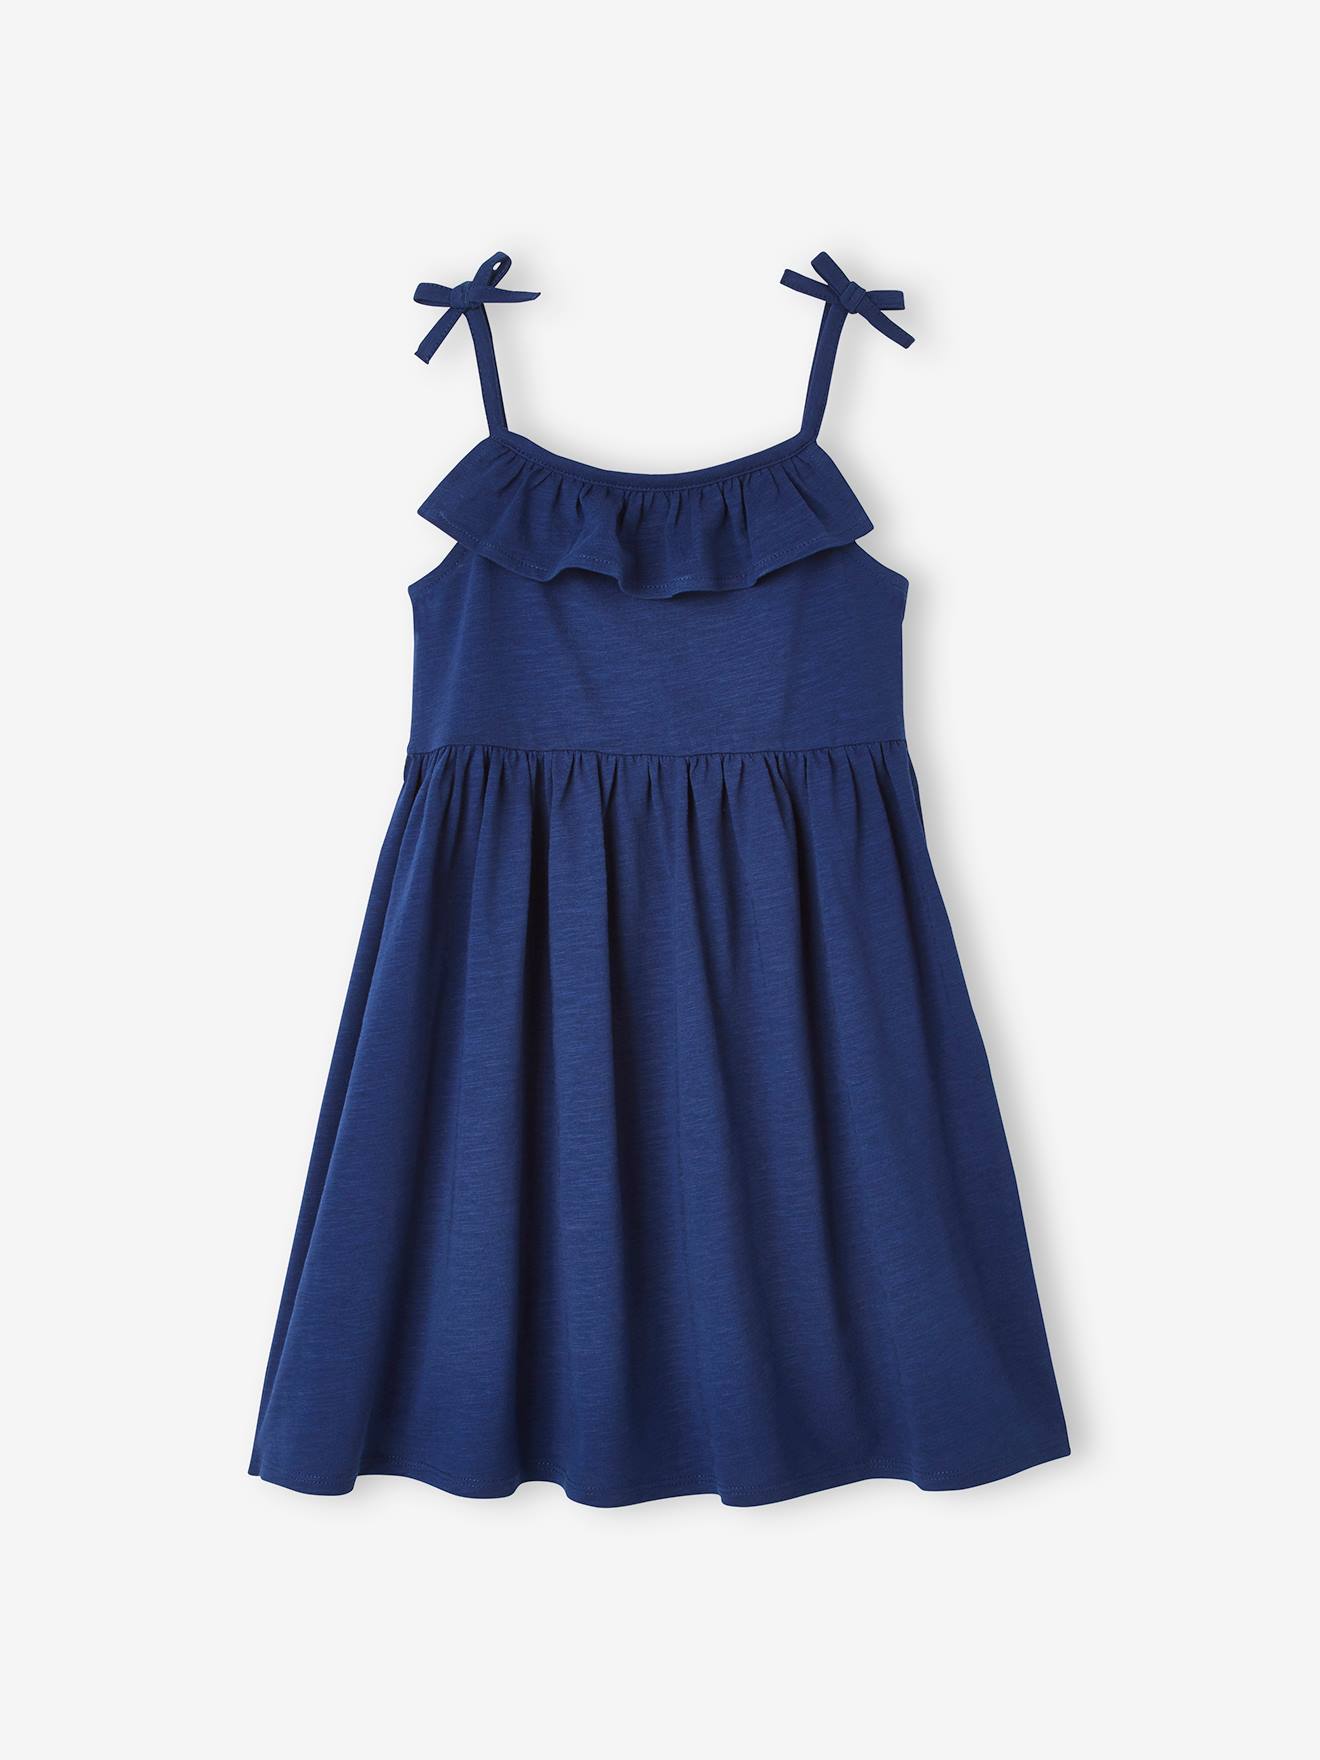 Pack de 2 vestidos de tirantes 1 estampado + 1 liso, para niña azul medio  bicolor/multicolor - Vertbaudet